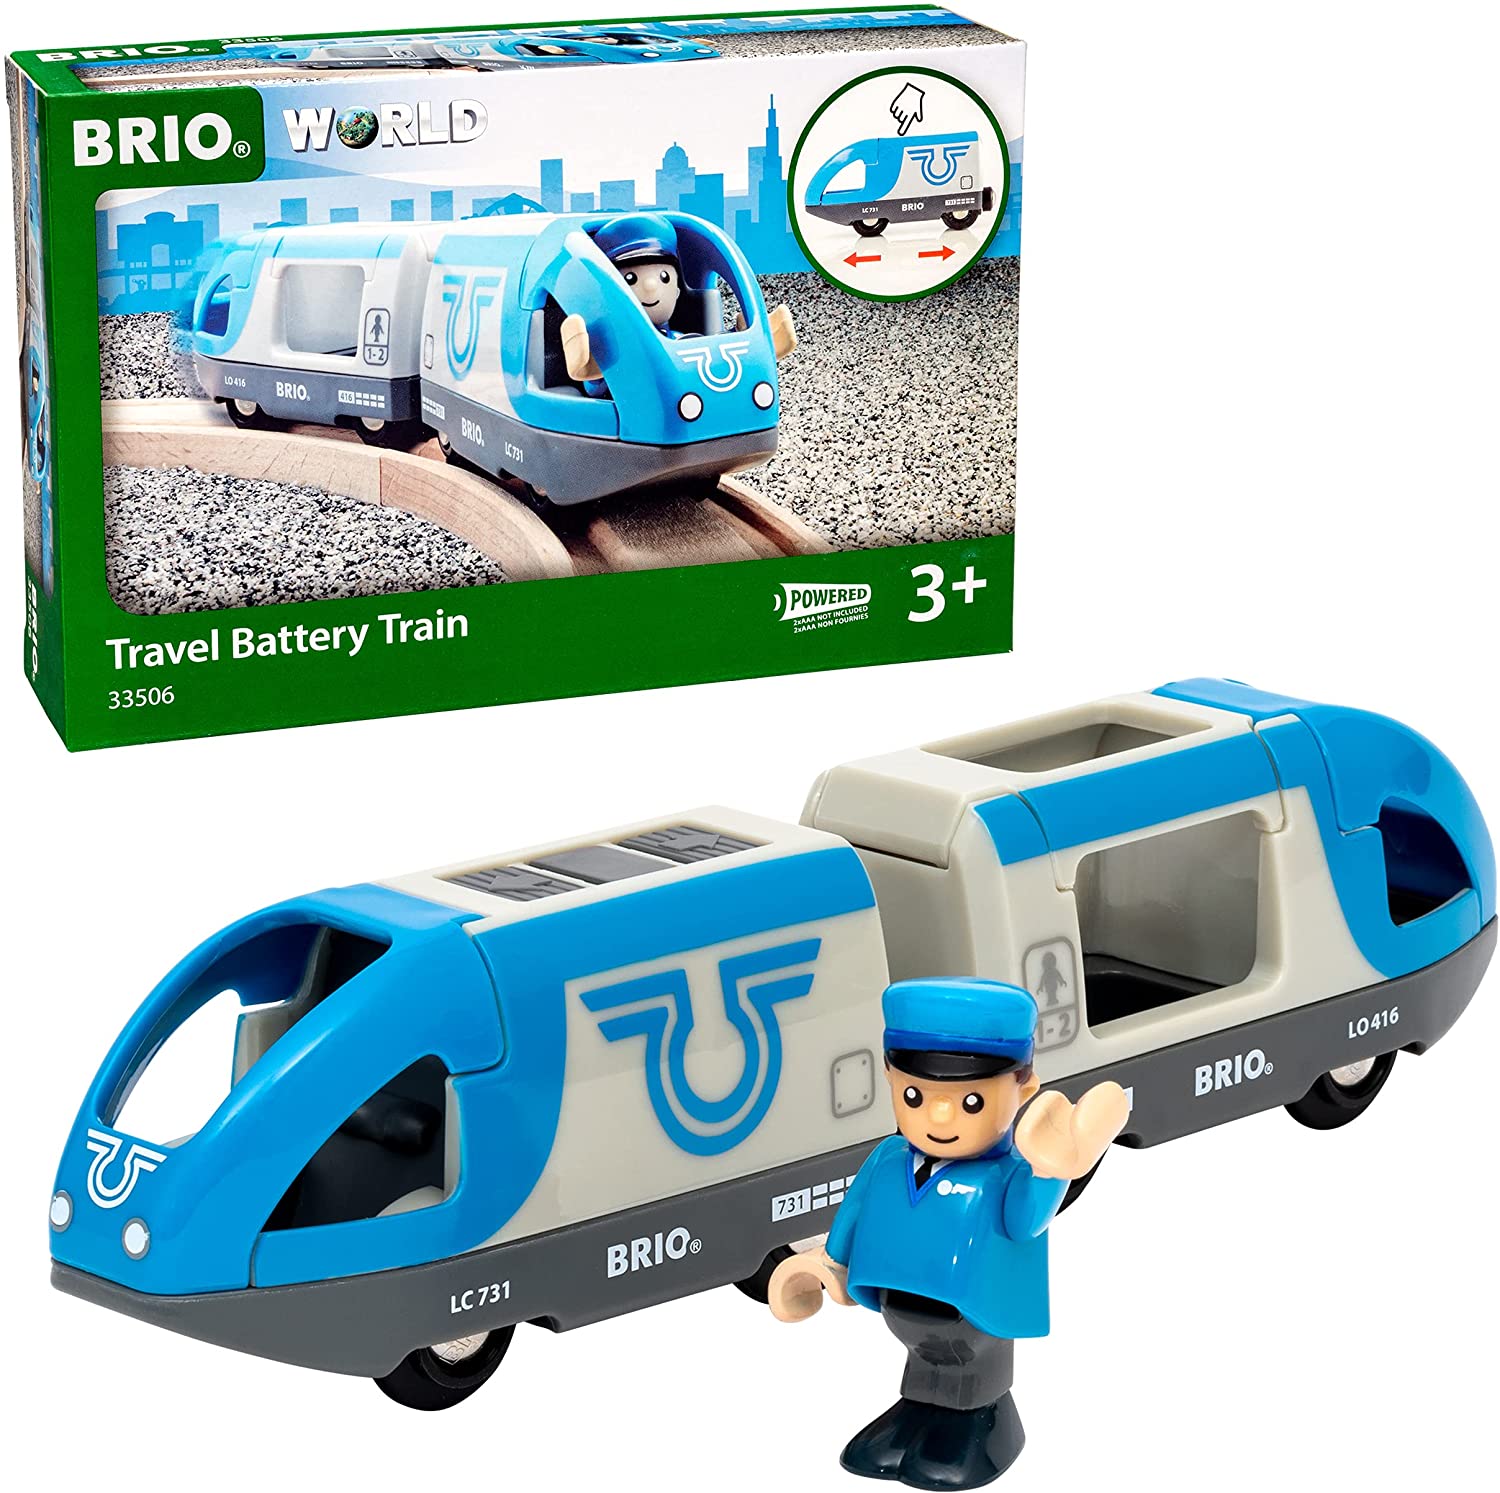 Brio: Travel Battery Train – Rhen's Nest Toy Shop